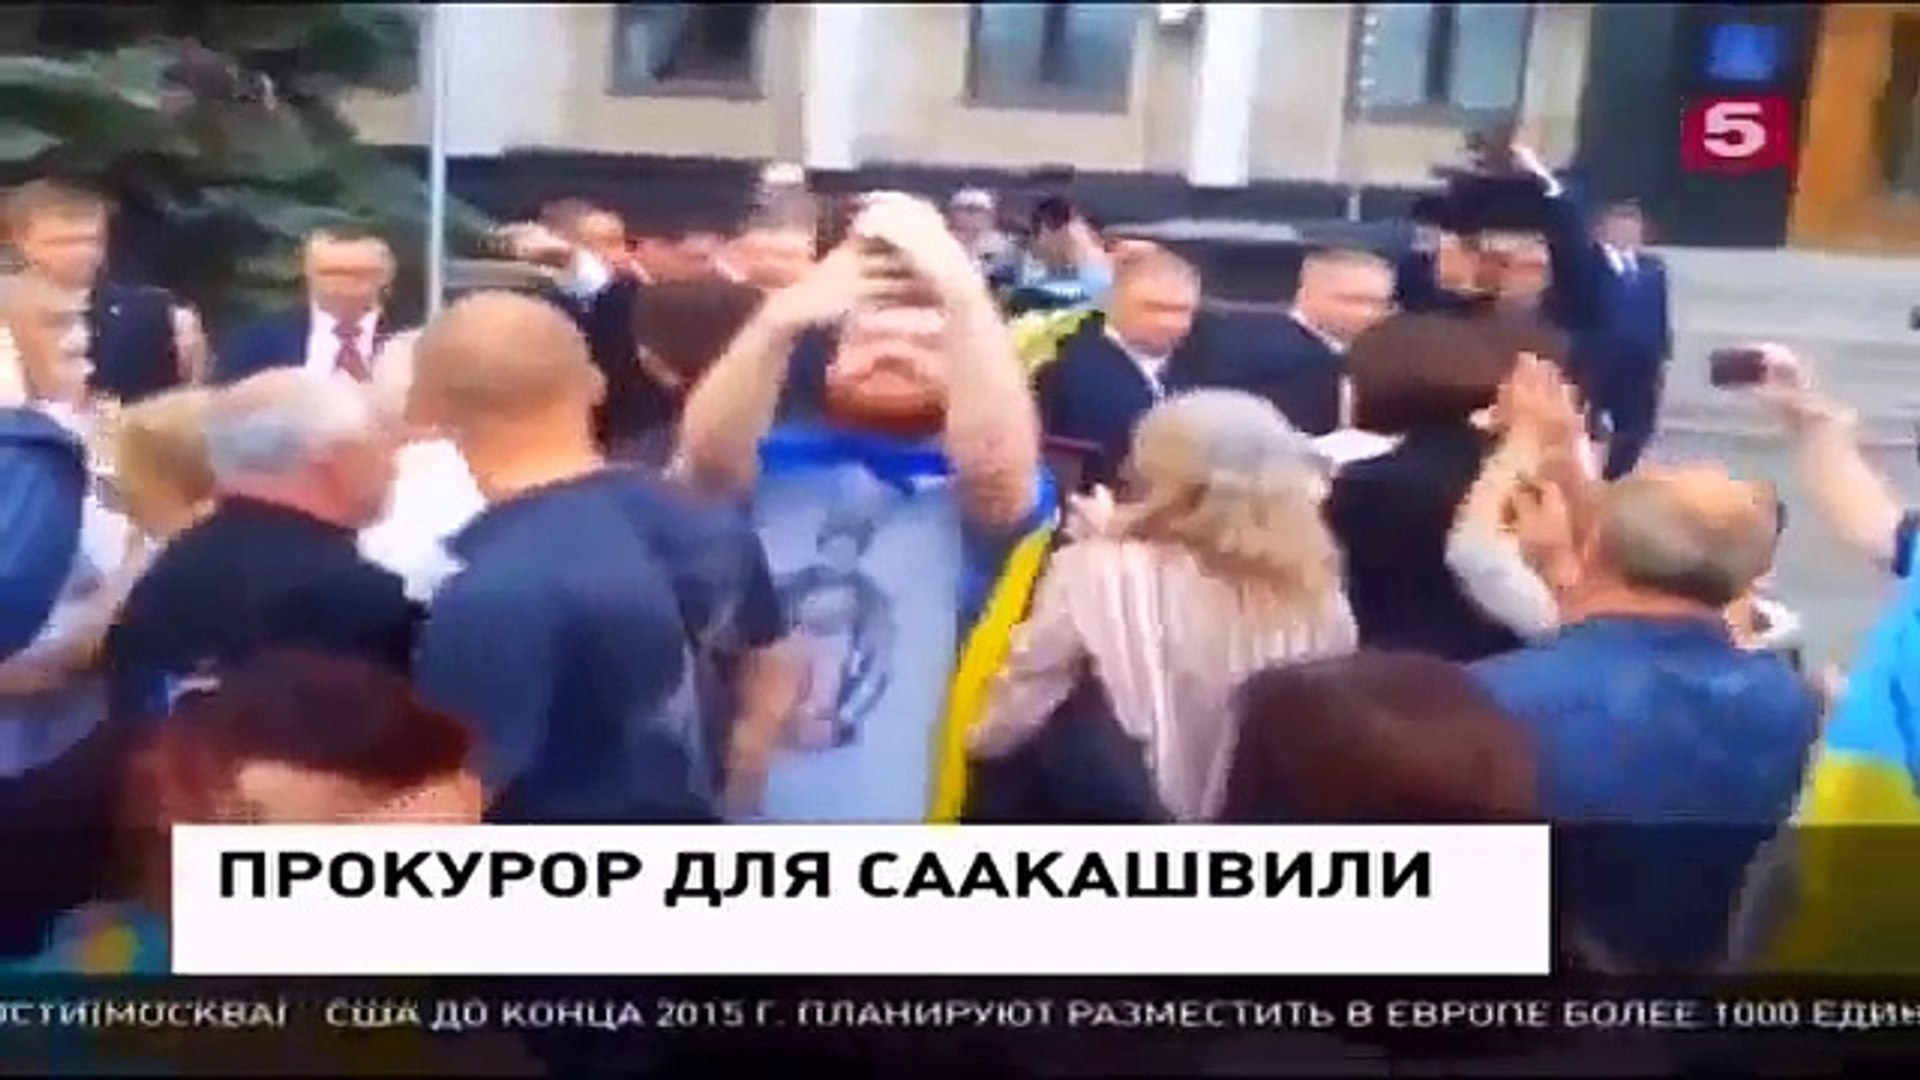 ⁣Прокурор для Саакашвили Новости Украины,России сегодня Мировые новости